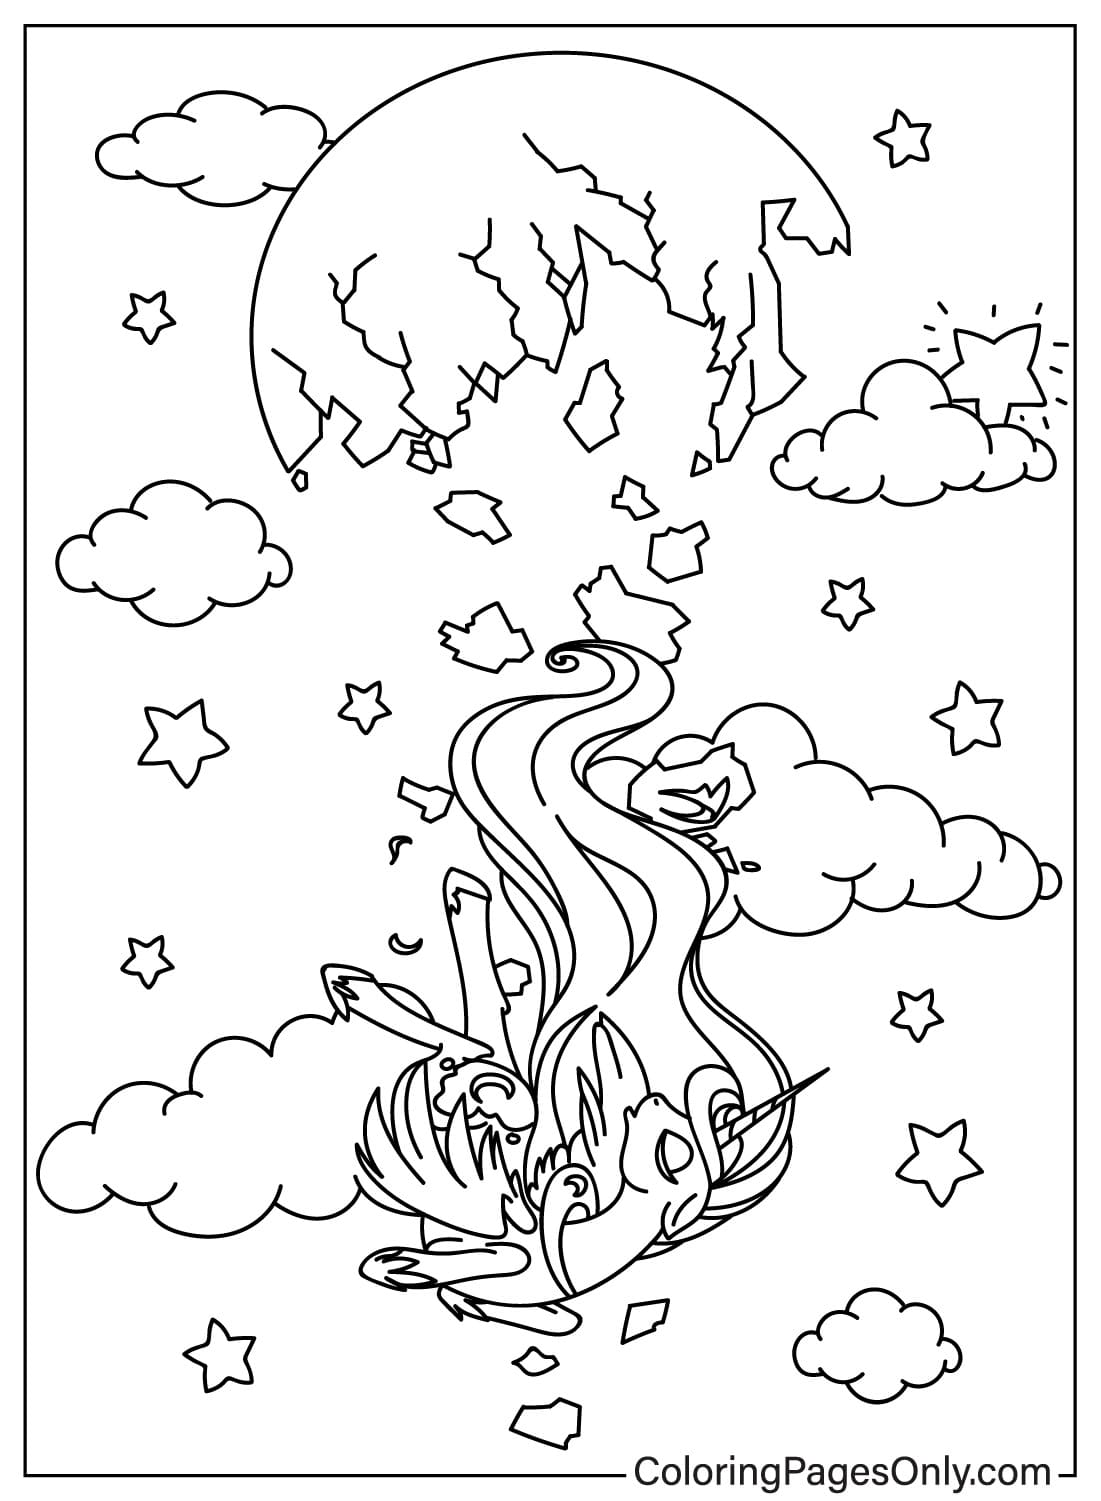 Página para colorear de la Princesa Luna cayendo del cielo de Princesa Luna